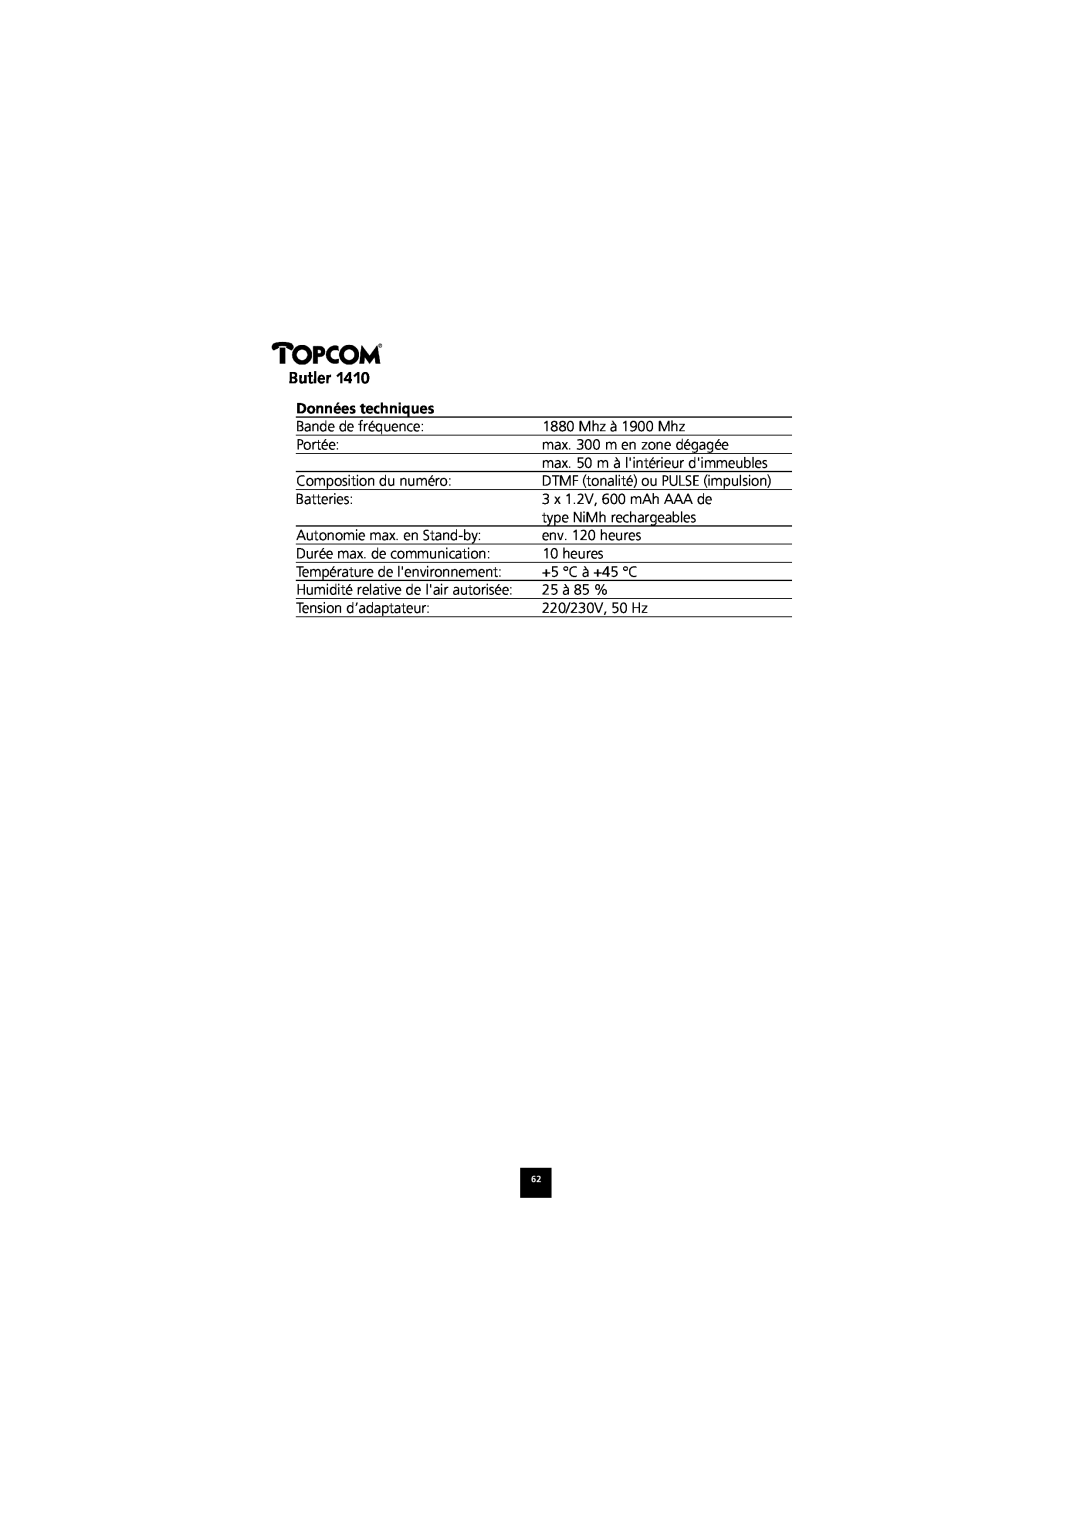 Topcom 1410 manual Données techniques, Butler 